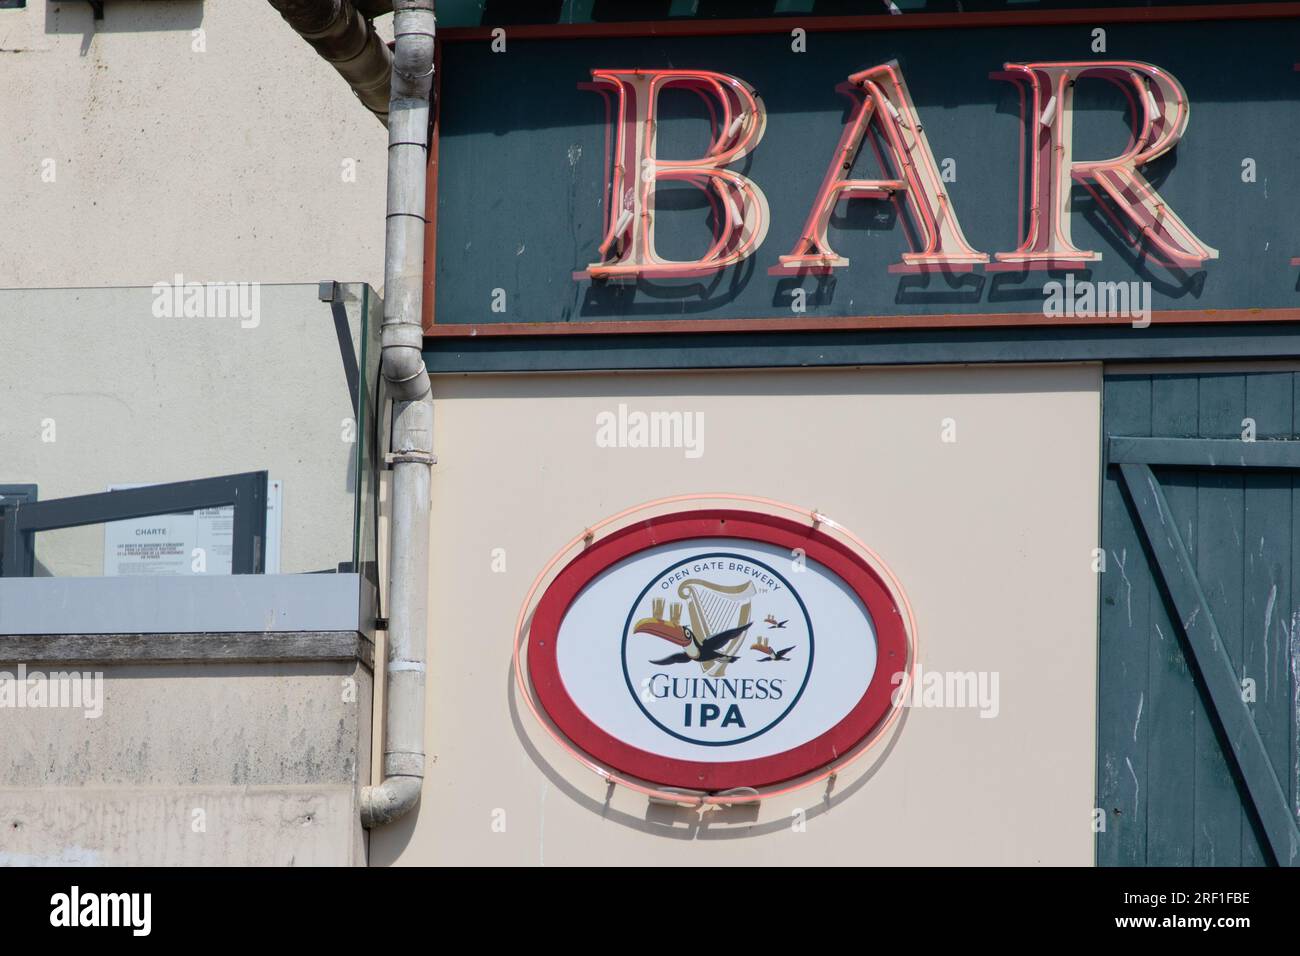 Bordeaux , Francia - 07 28 2023 : testo del cartello della birra guinness e logo del marchio IPA Open Gate Brewery sulla facciata del pub bar Foto Stock